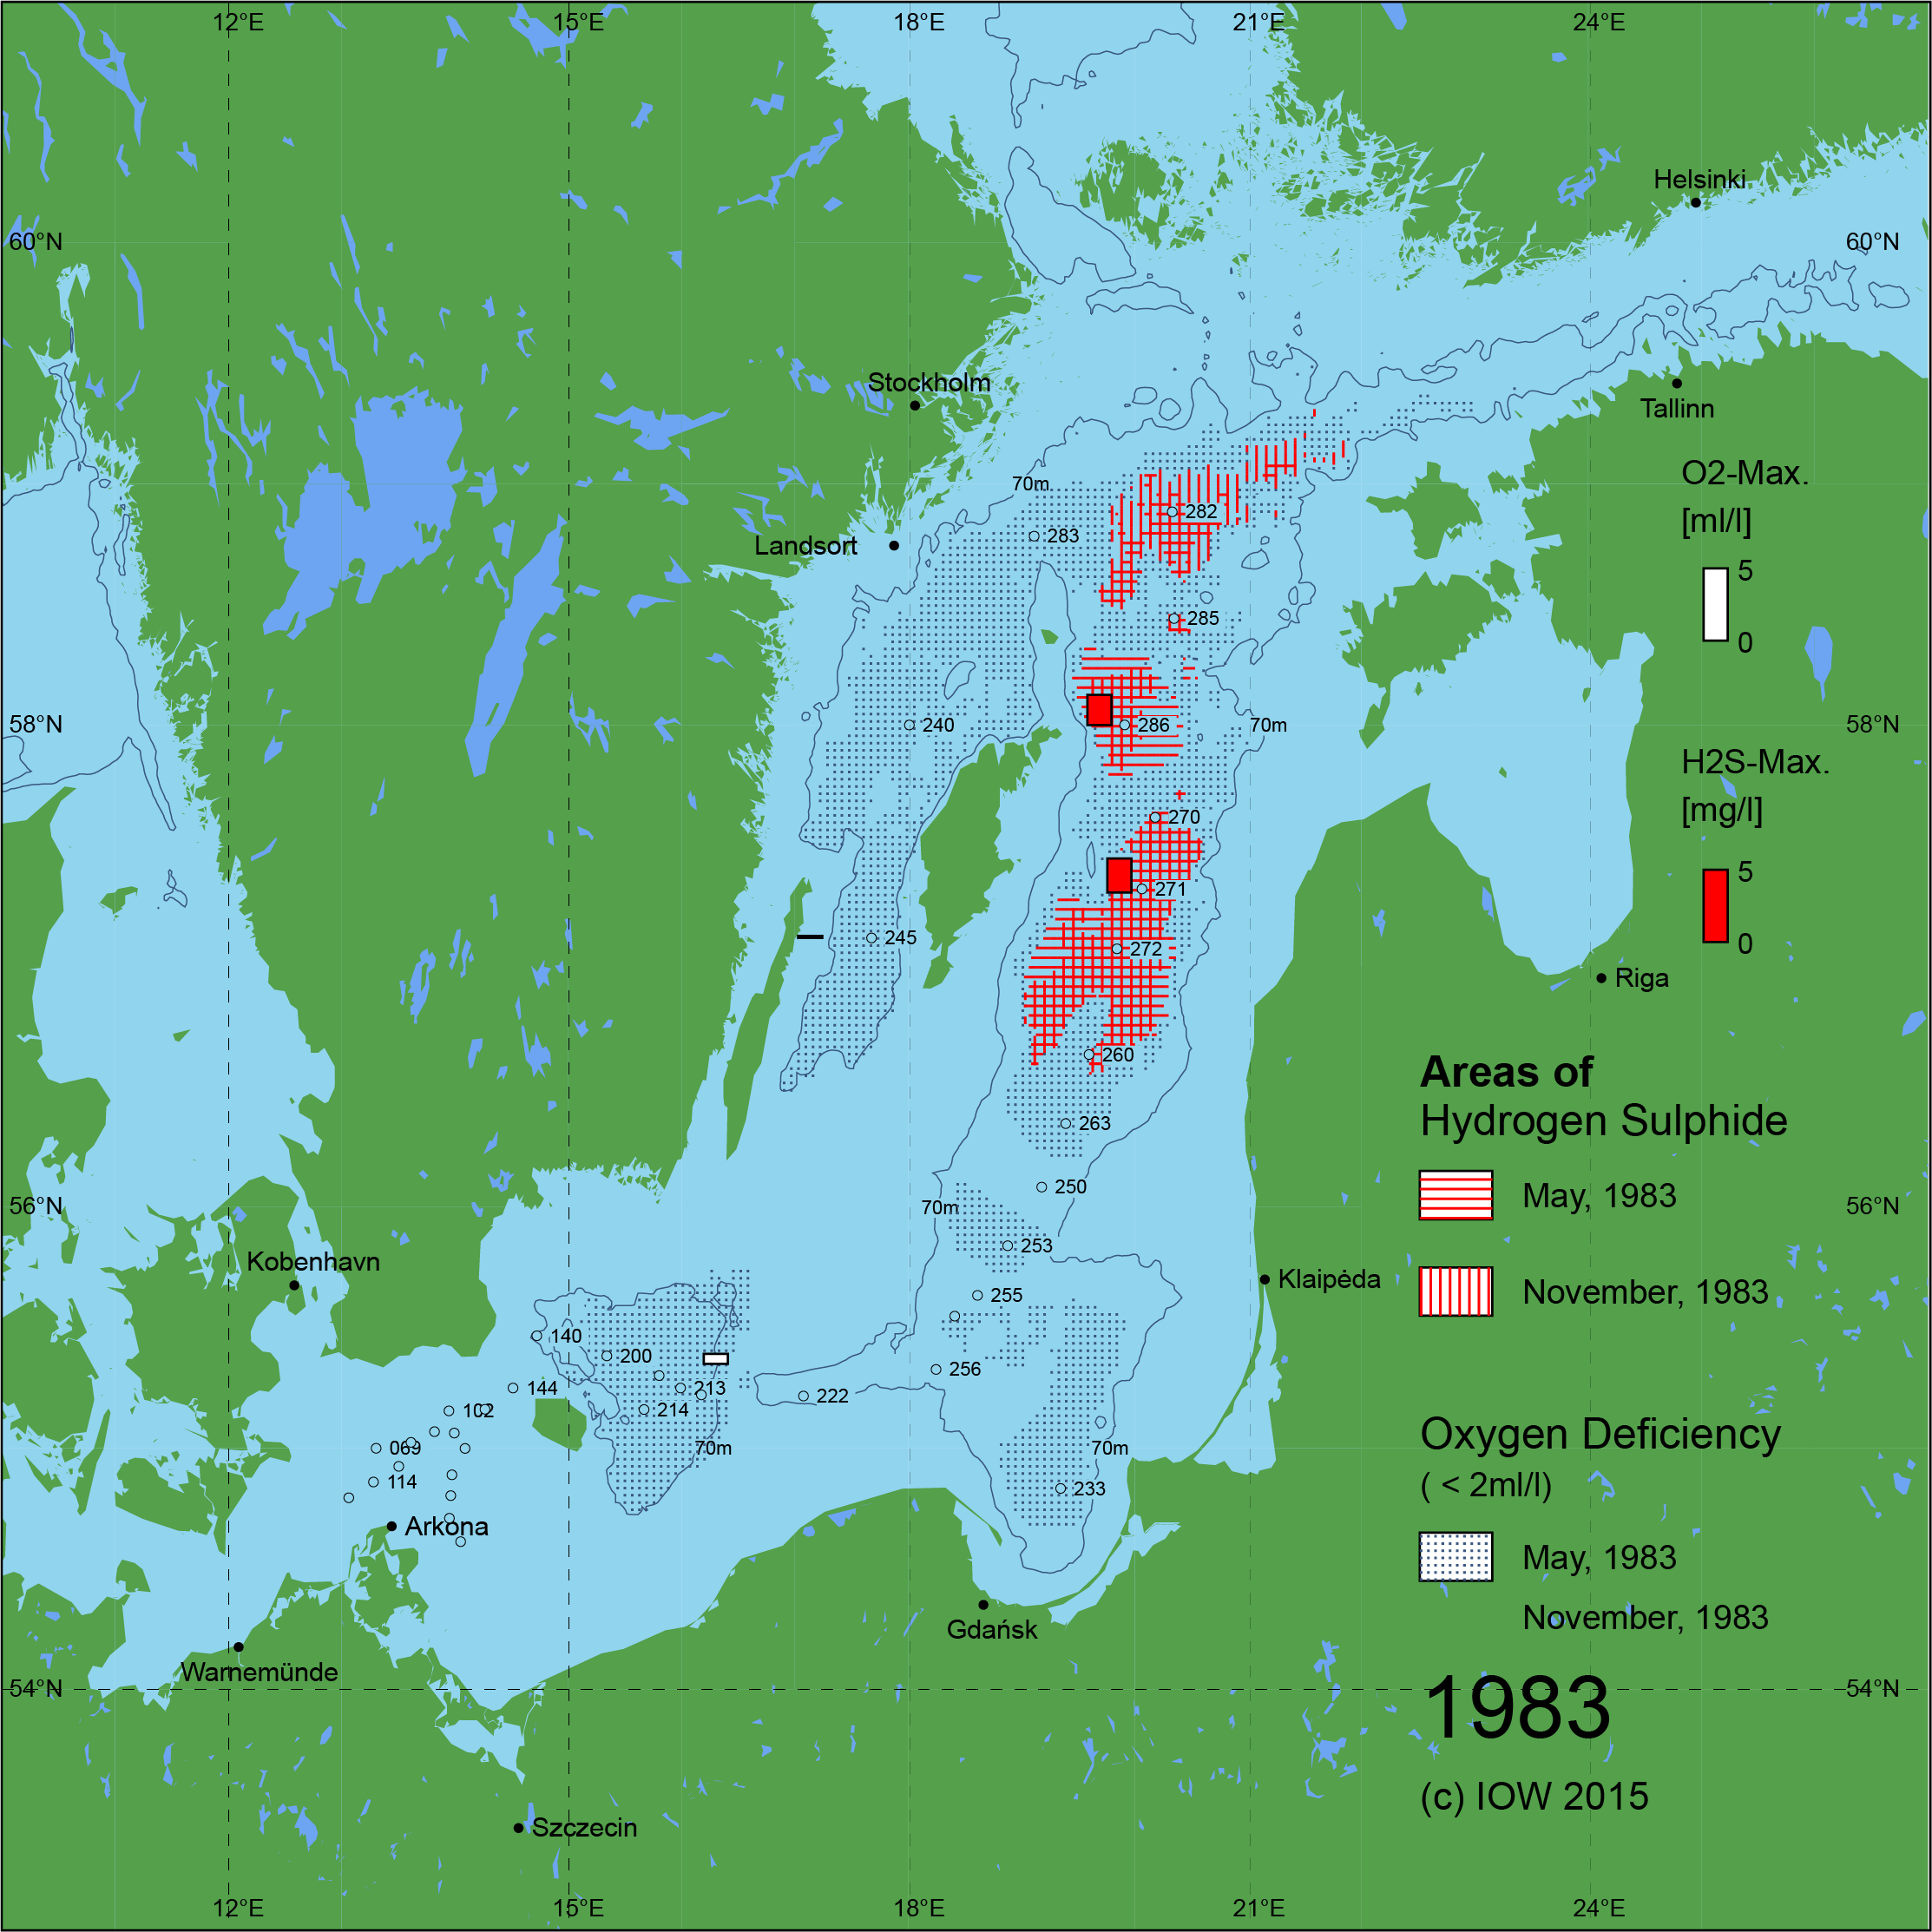 Sauerstoffarme und sauerstofffreie Gebiete in der Ostsee - 1983